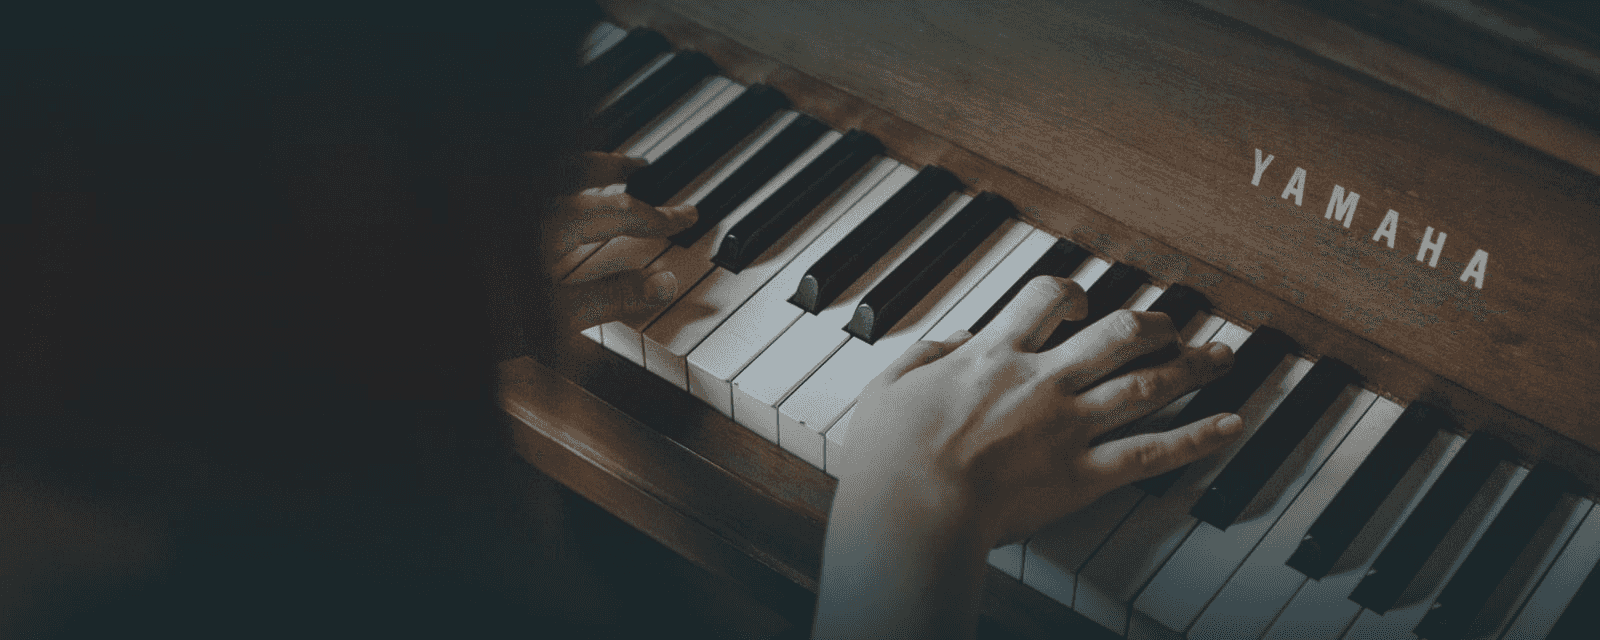 Orgelspielen zu koennen, sowie Klavier gemaess Motivation. 